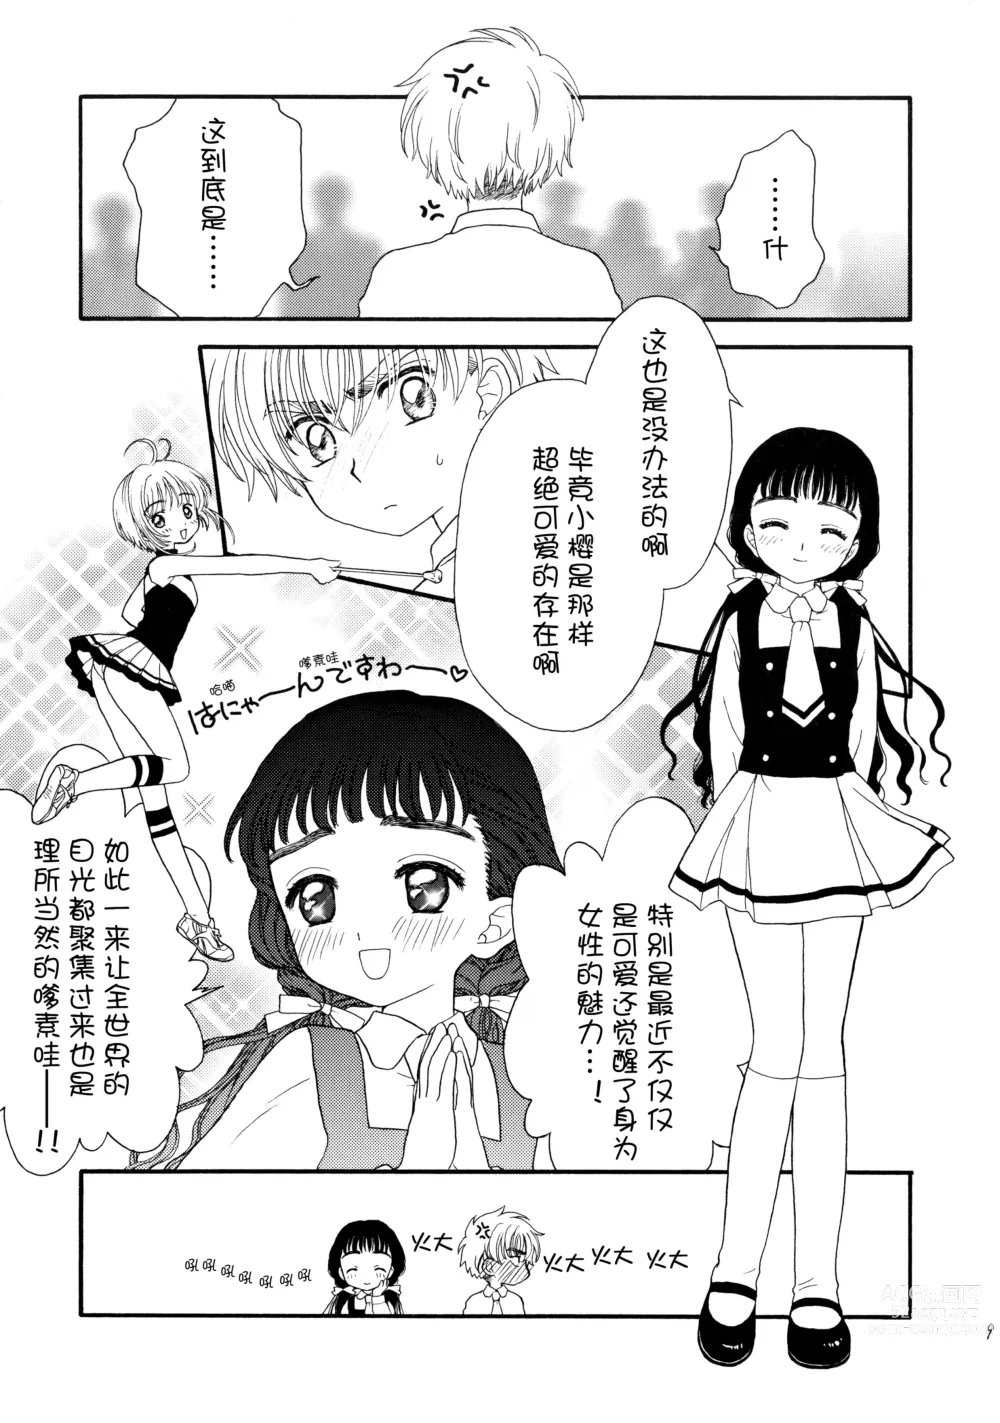 Page 9 of doujinshi Hitorijime